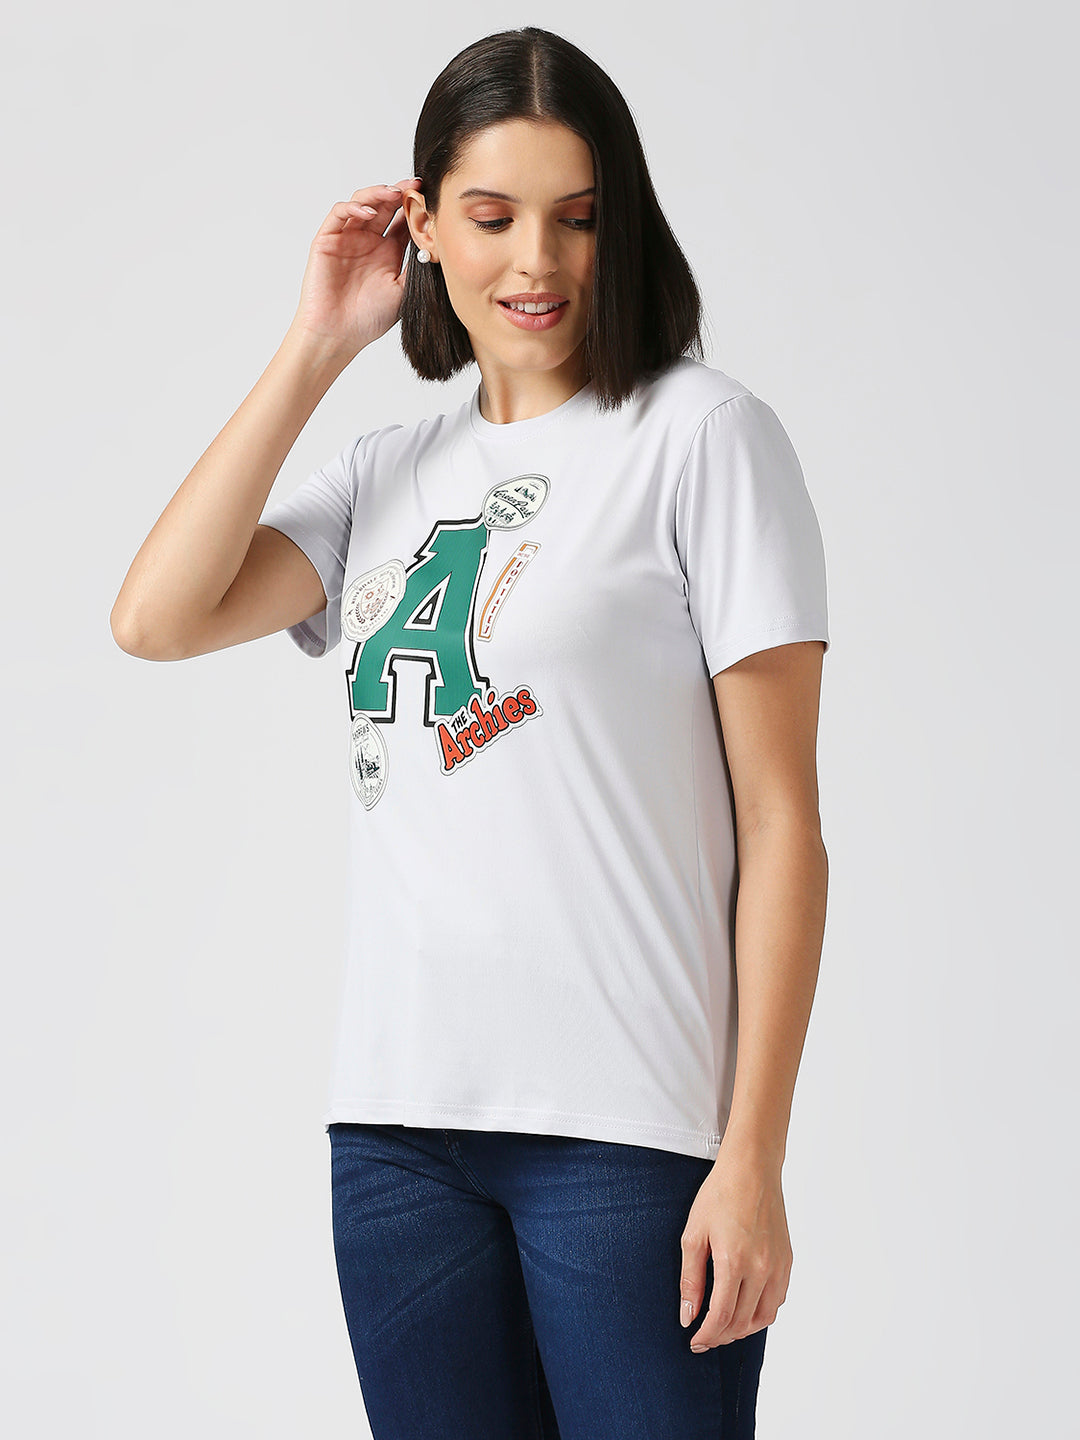 Archies Unisex T-shirt